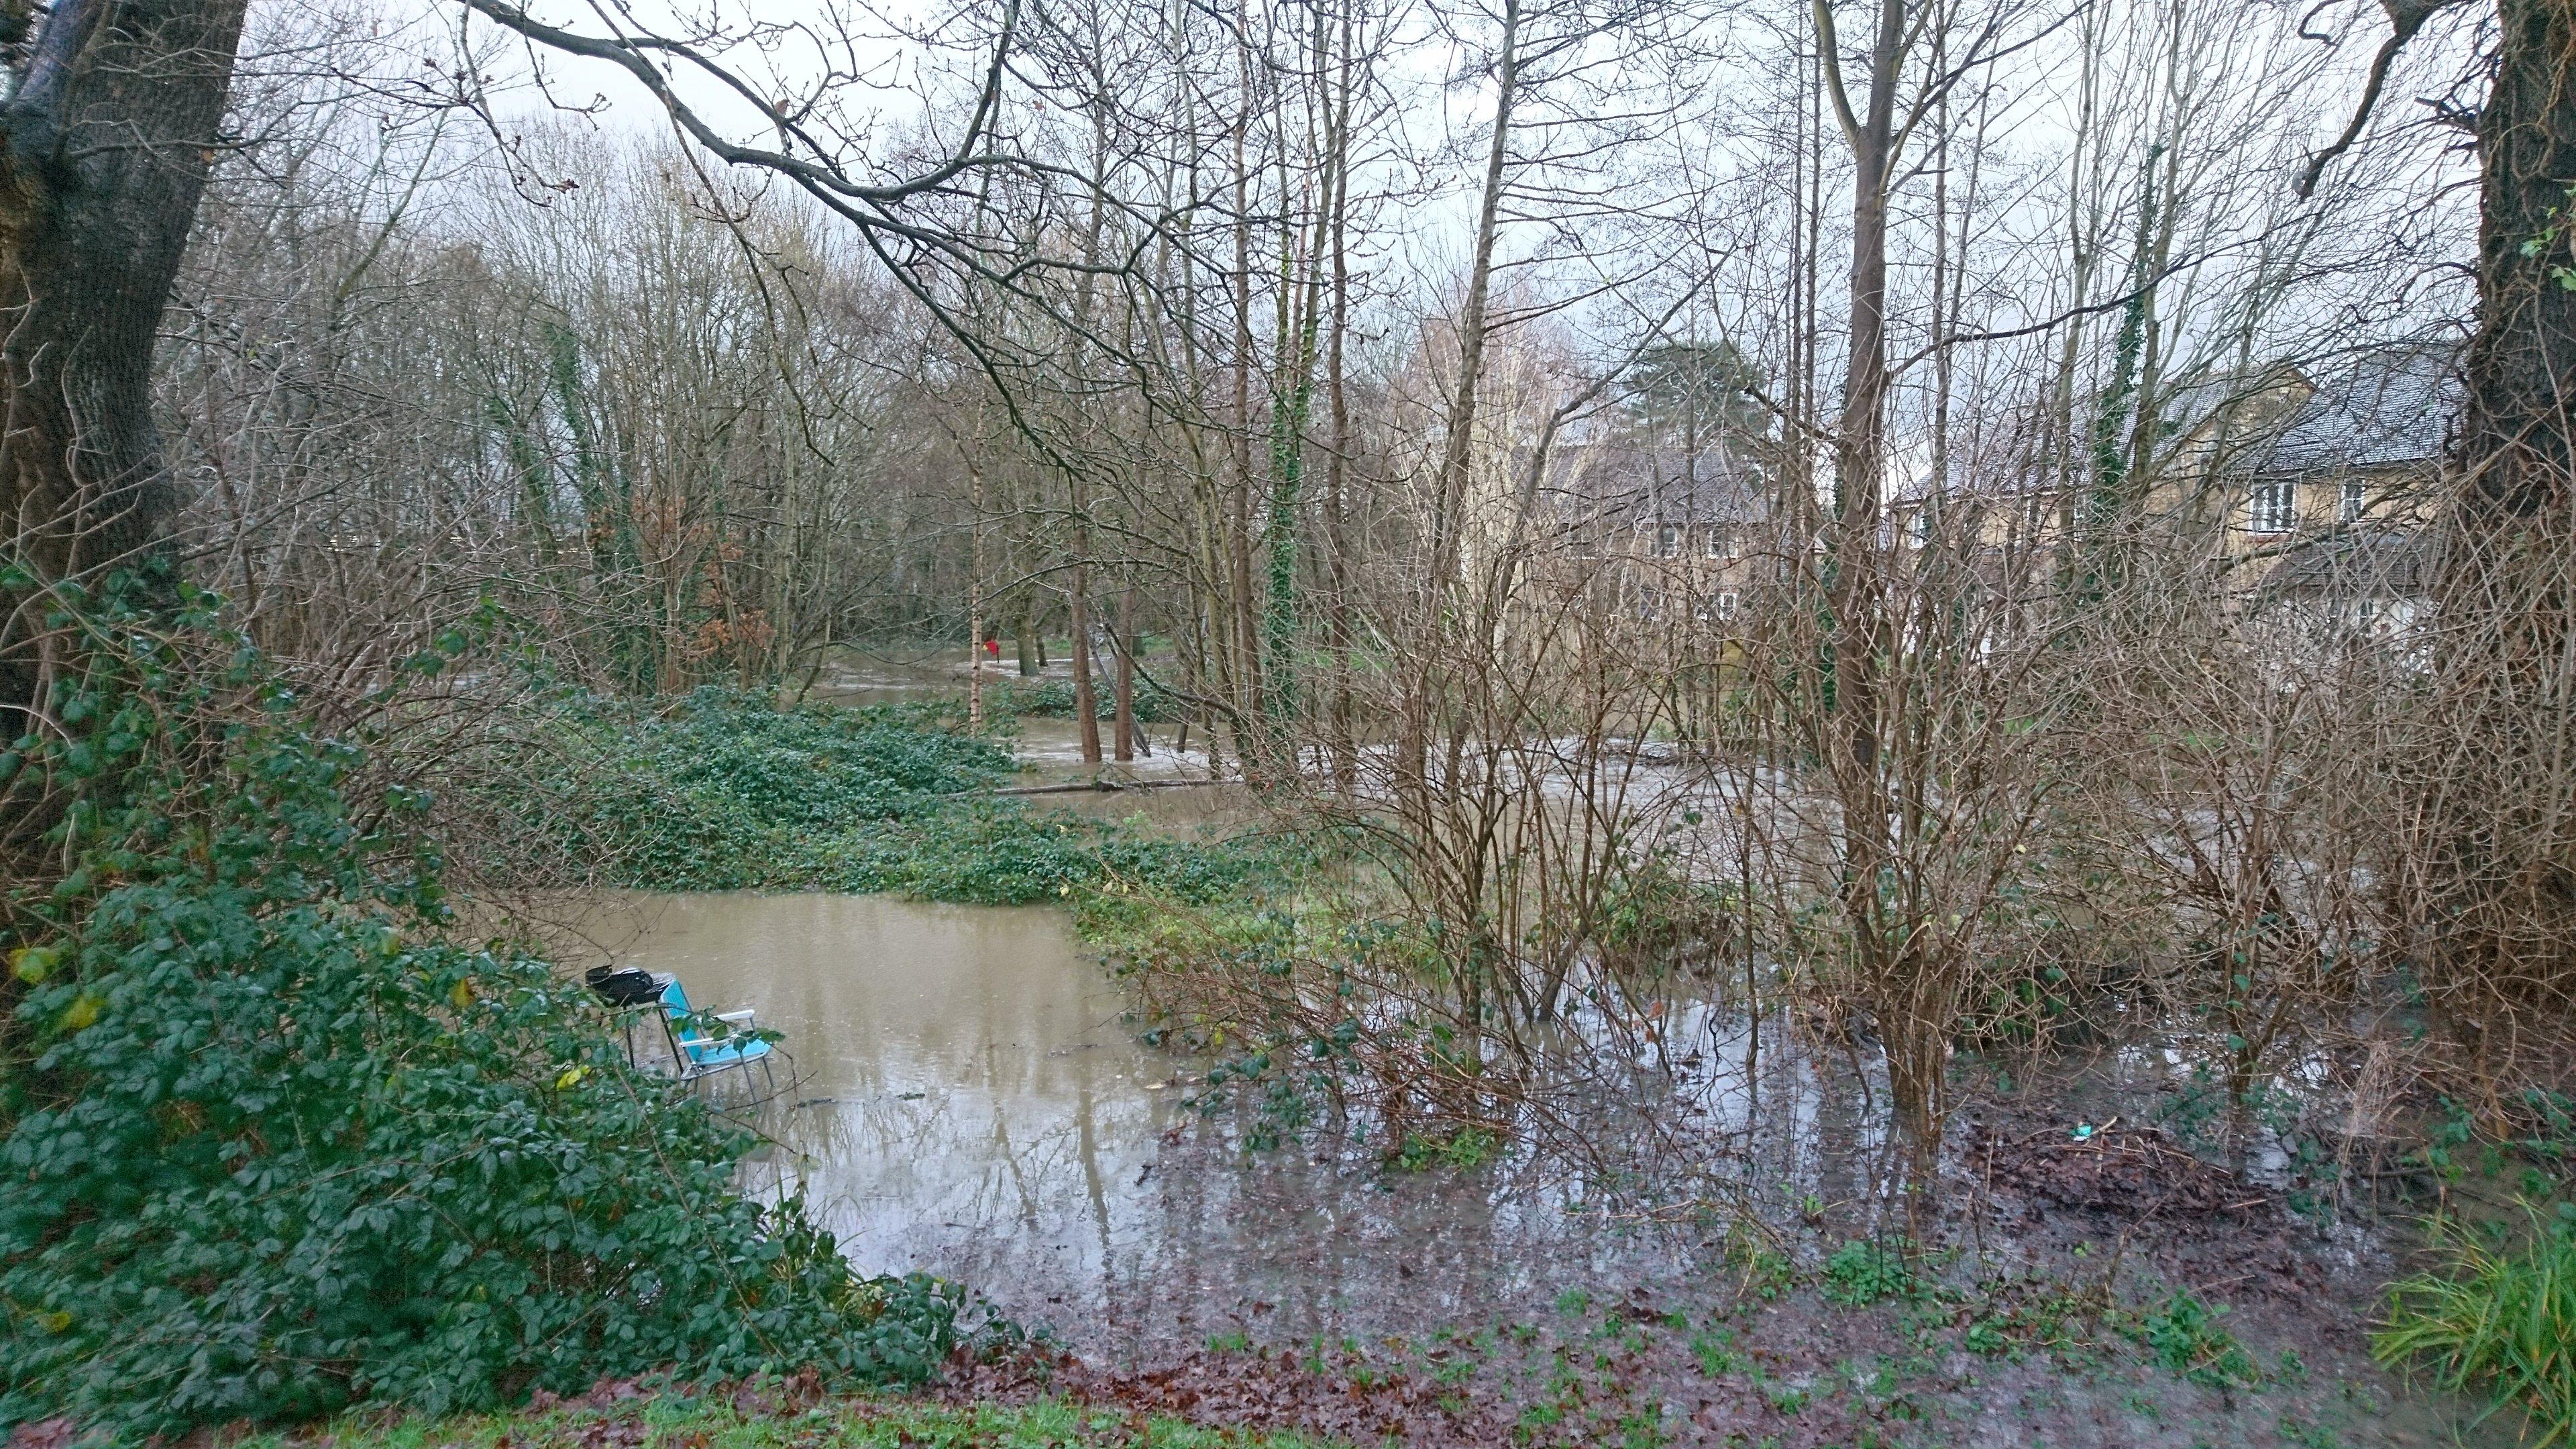 Flooding in Horsham. Photo by Bartlomiej Jedrzejczak